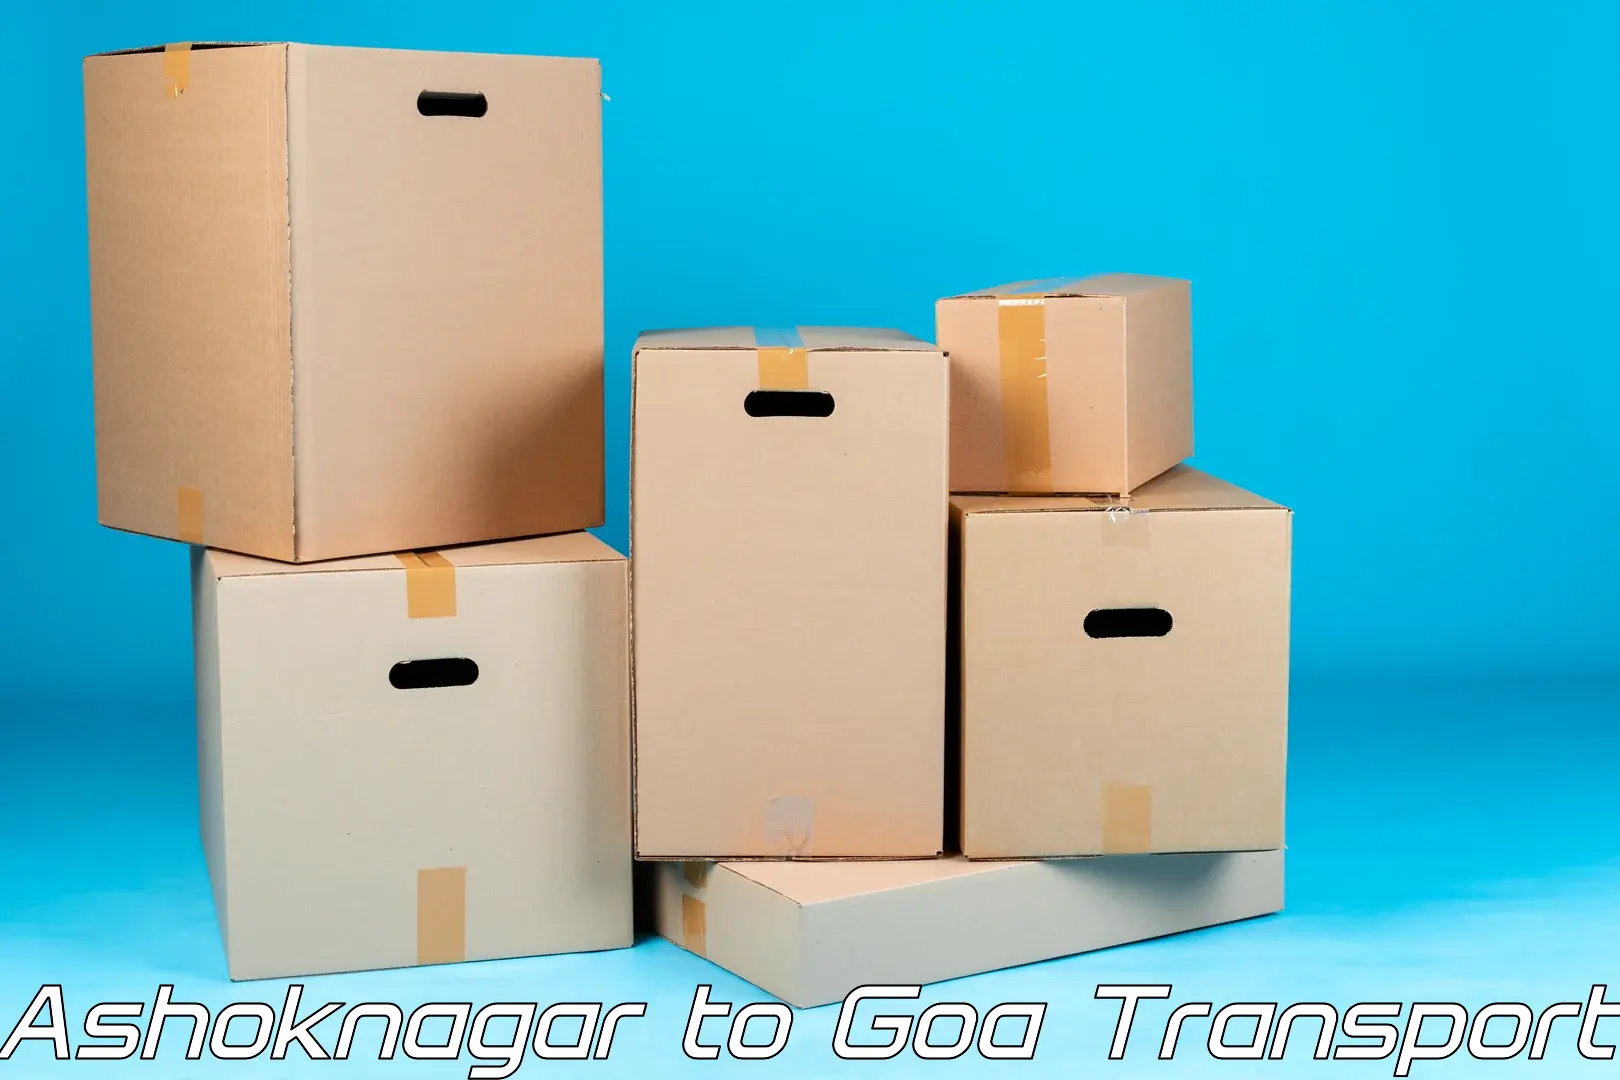 Container transportation services Ashoknagar to IIT Goa